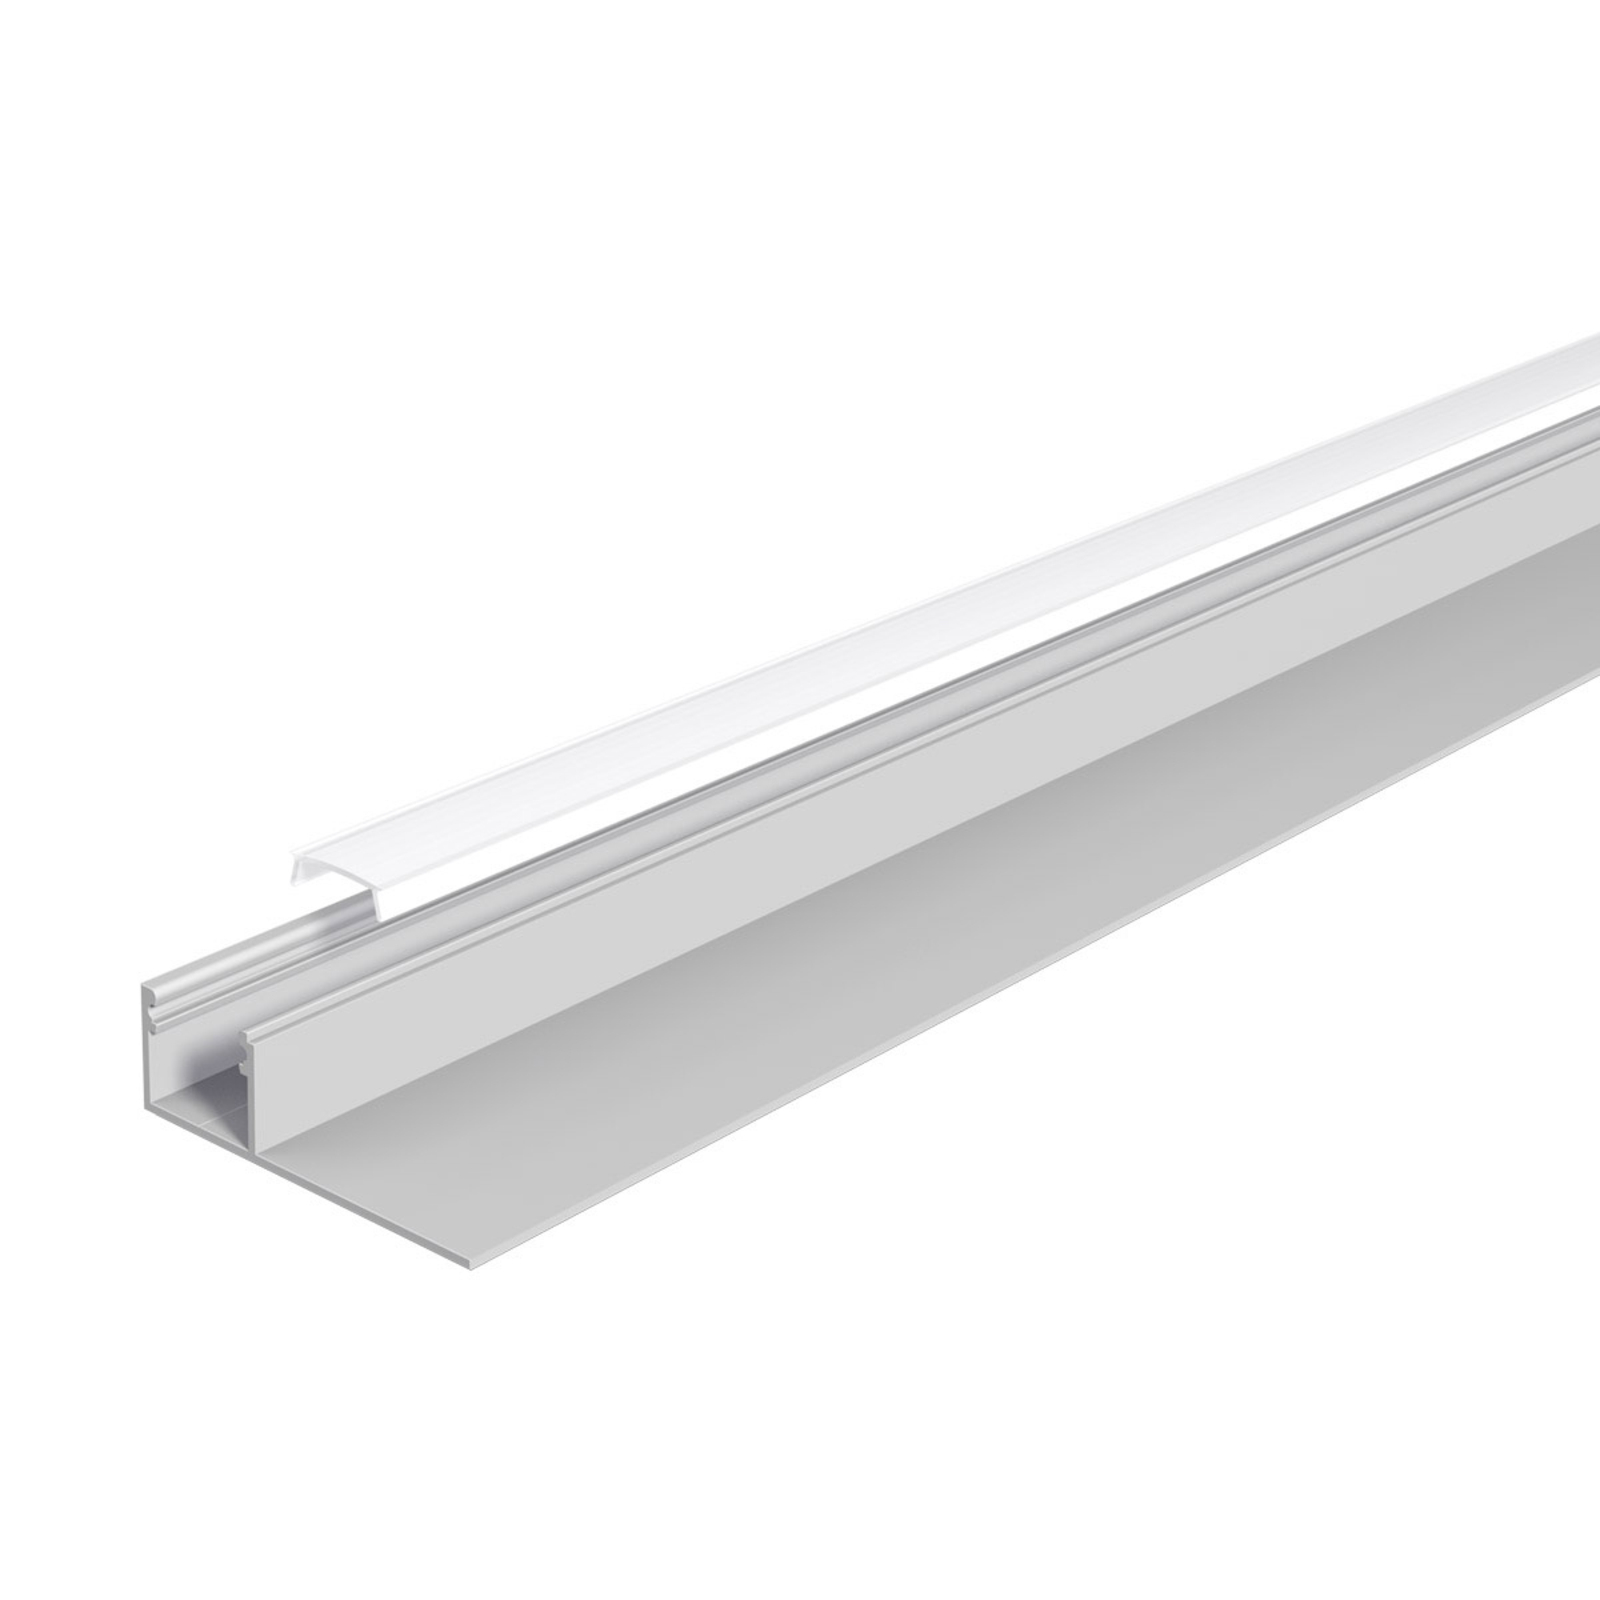 EVN drywall profile length 200 cm width 4.7 cm